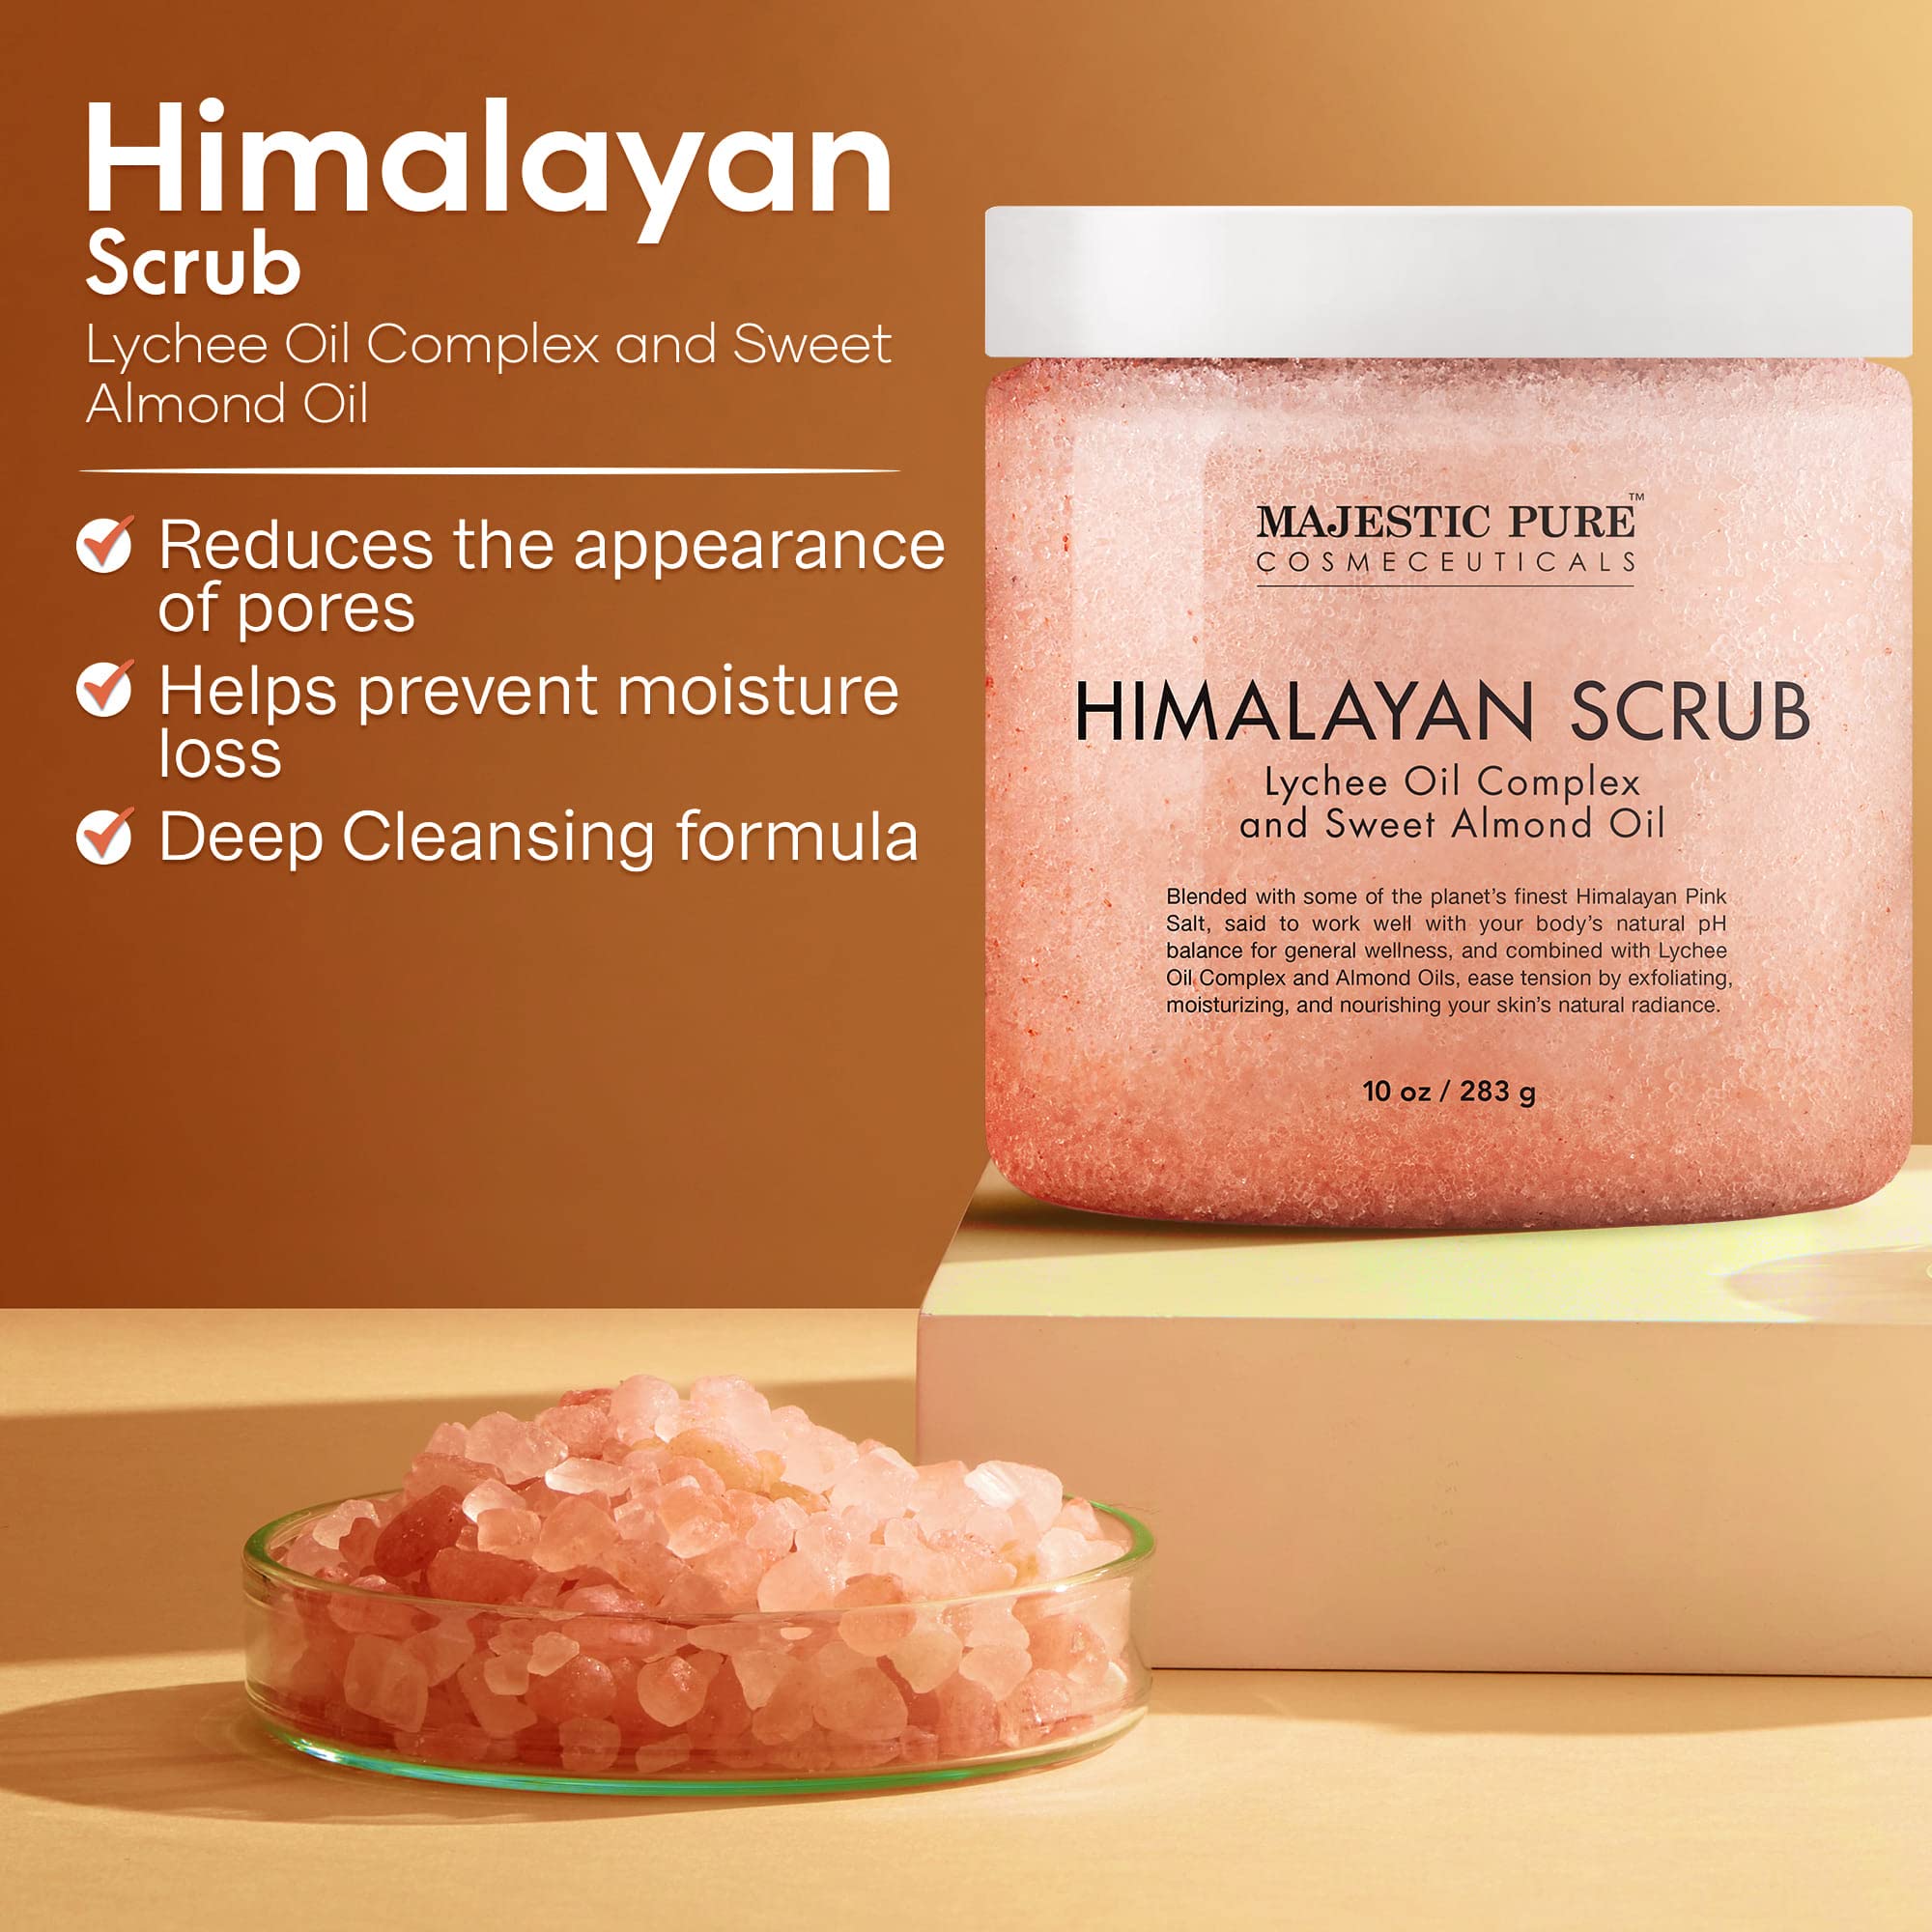 MAJESTIC PURE Himalayan Salt Body Scrub with Lychee Oil, Exfoliating Salt Scrub to Exfoliate & Moisturize Skin, Deep Cleansing - 10 oz